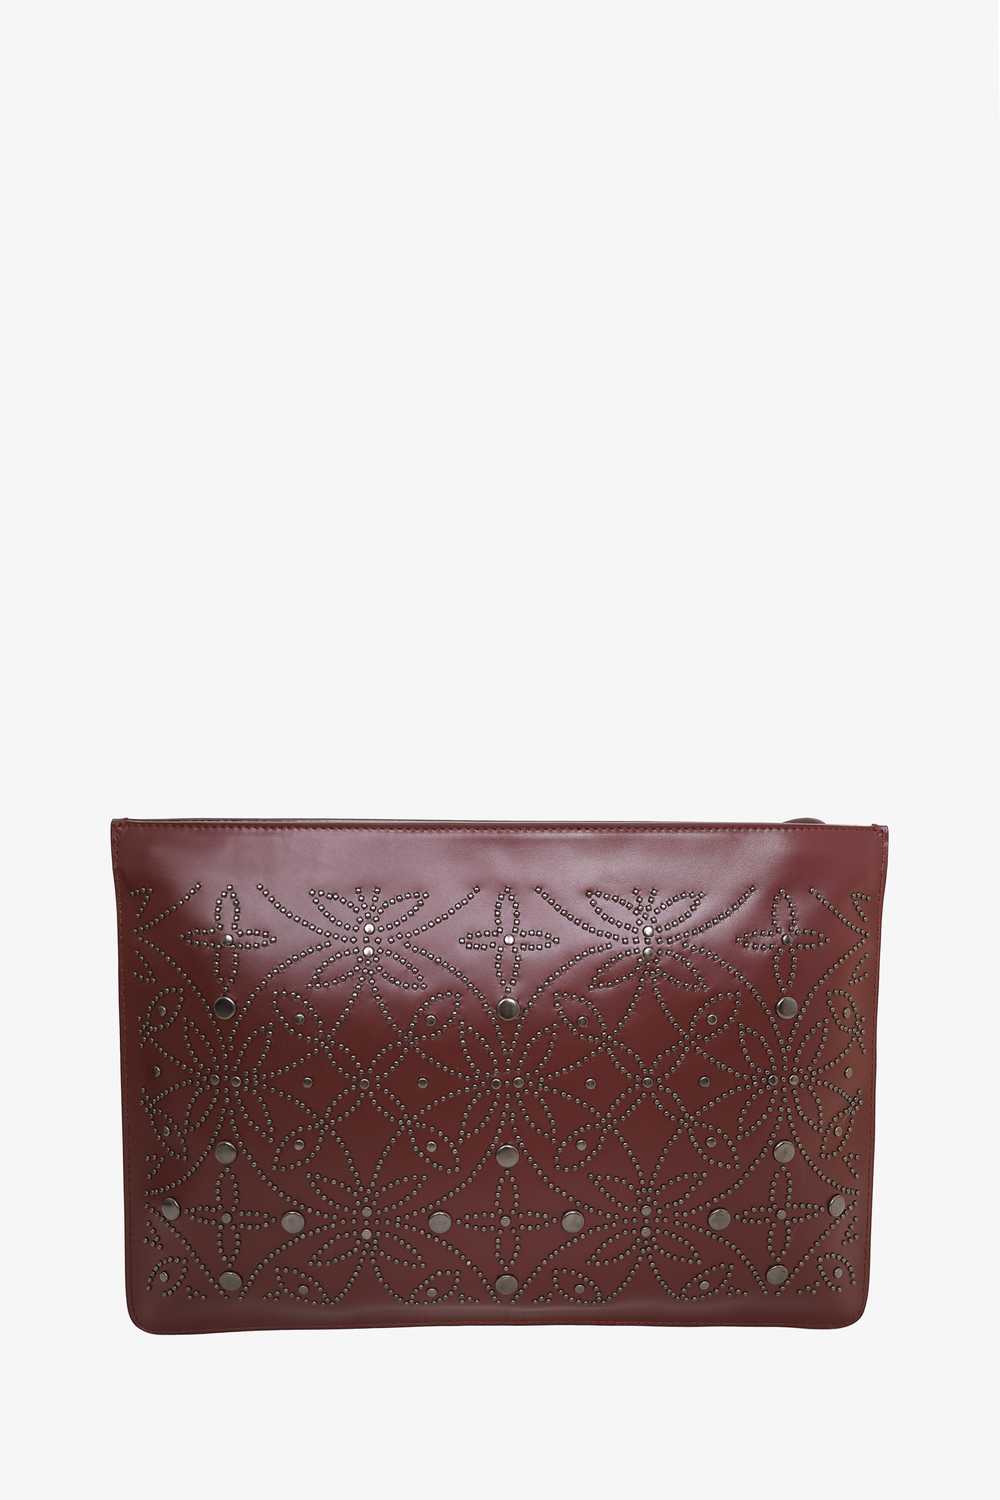 Alaïa Burgundy Leather Studded Pouch - image 2